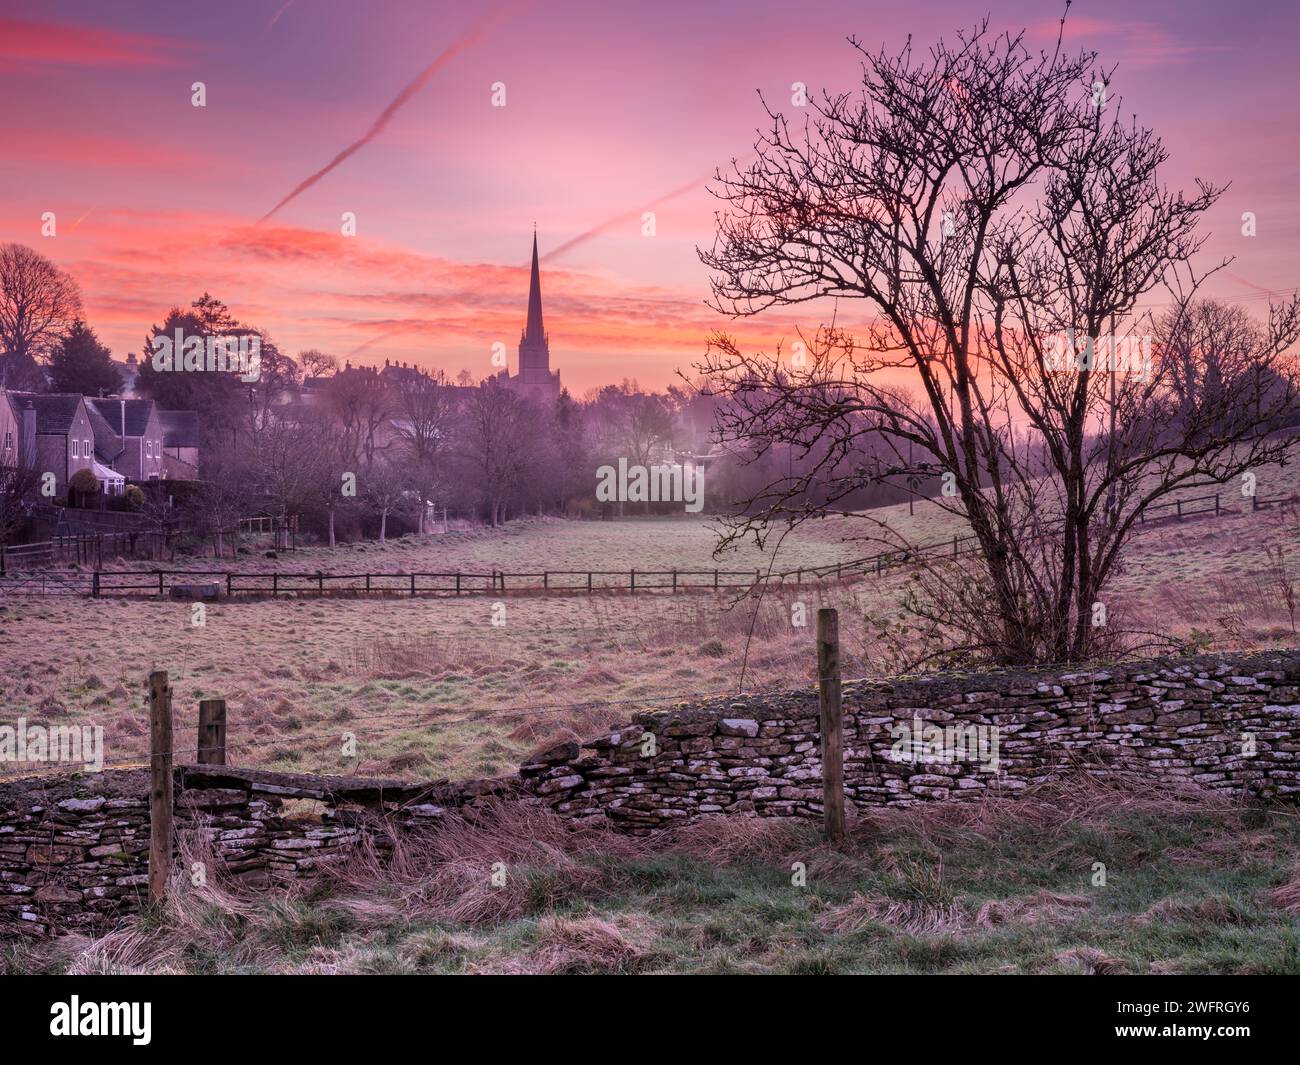 Jeudi 1 février 2024. Tetbury, Gloucestershire, Angleterre - après une nuit froide dans l'ouest de l'Angleterre, le ciel devient rose lorsque le soleil commence à se lever sur une prairie brumeuse dans la ville marchande de Tetbury, dans le Gloucestershire. Crédit : Terry Mathews/Alamy Live News Banque D'Images